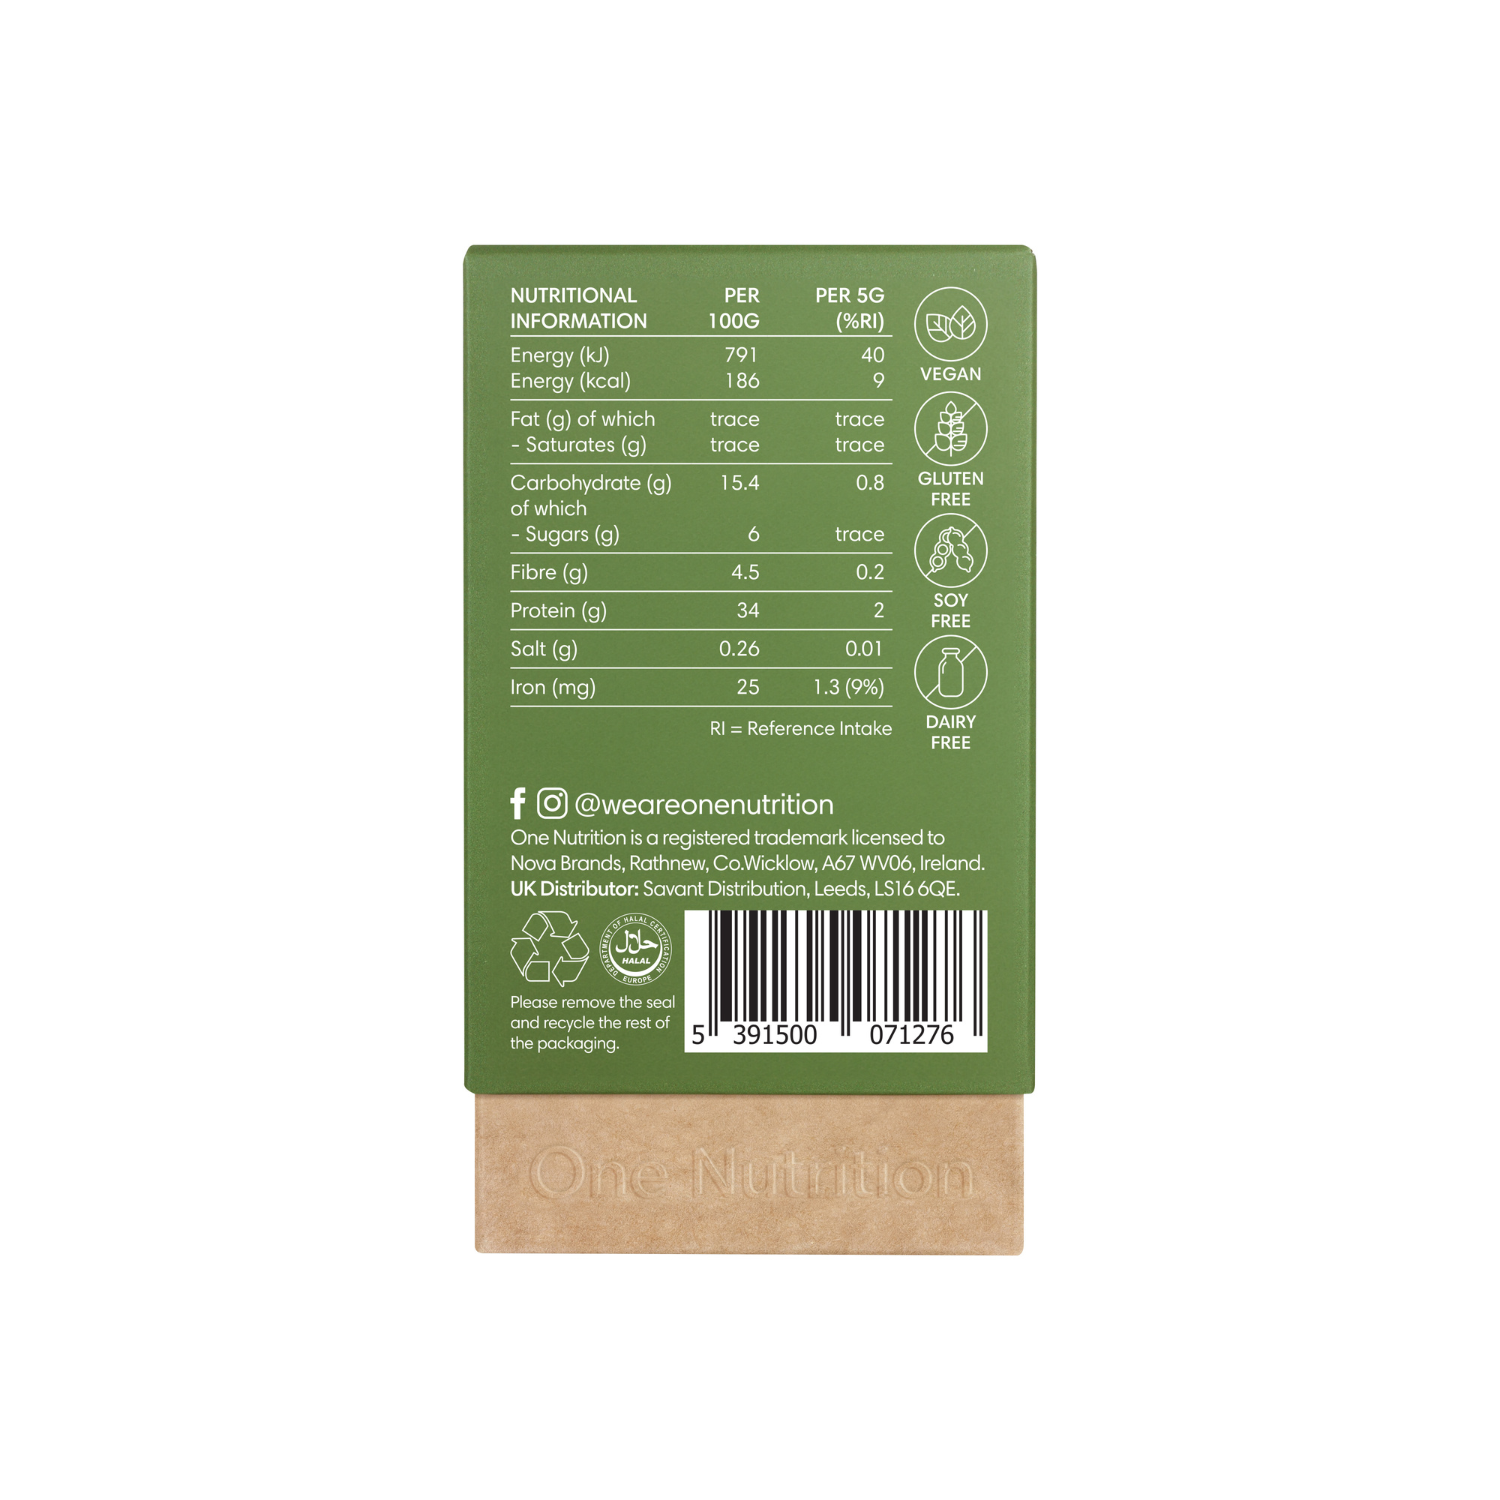 One Nutrition Ekologiškos kviečių želmenų sultys (Wheatgrass Juice) 100 g. milteliai